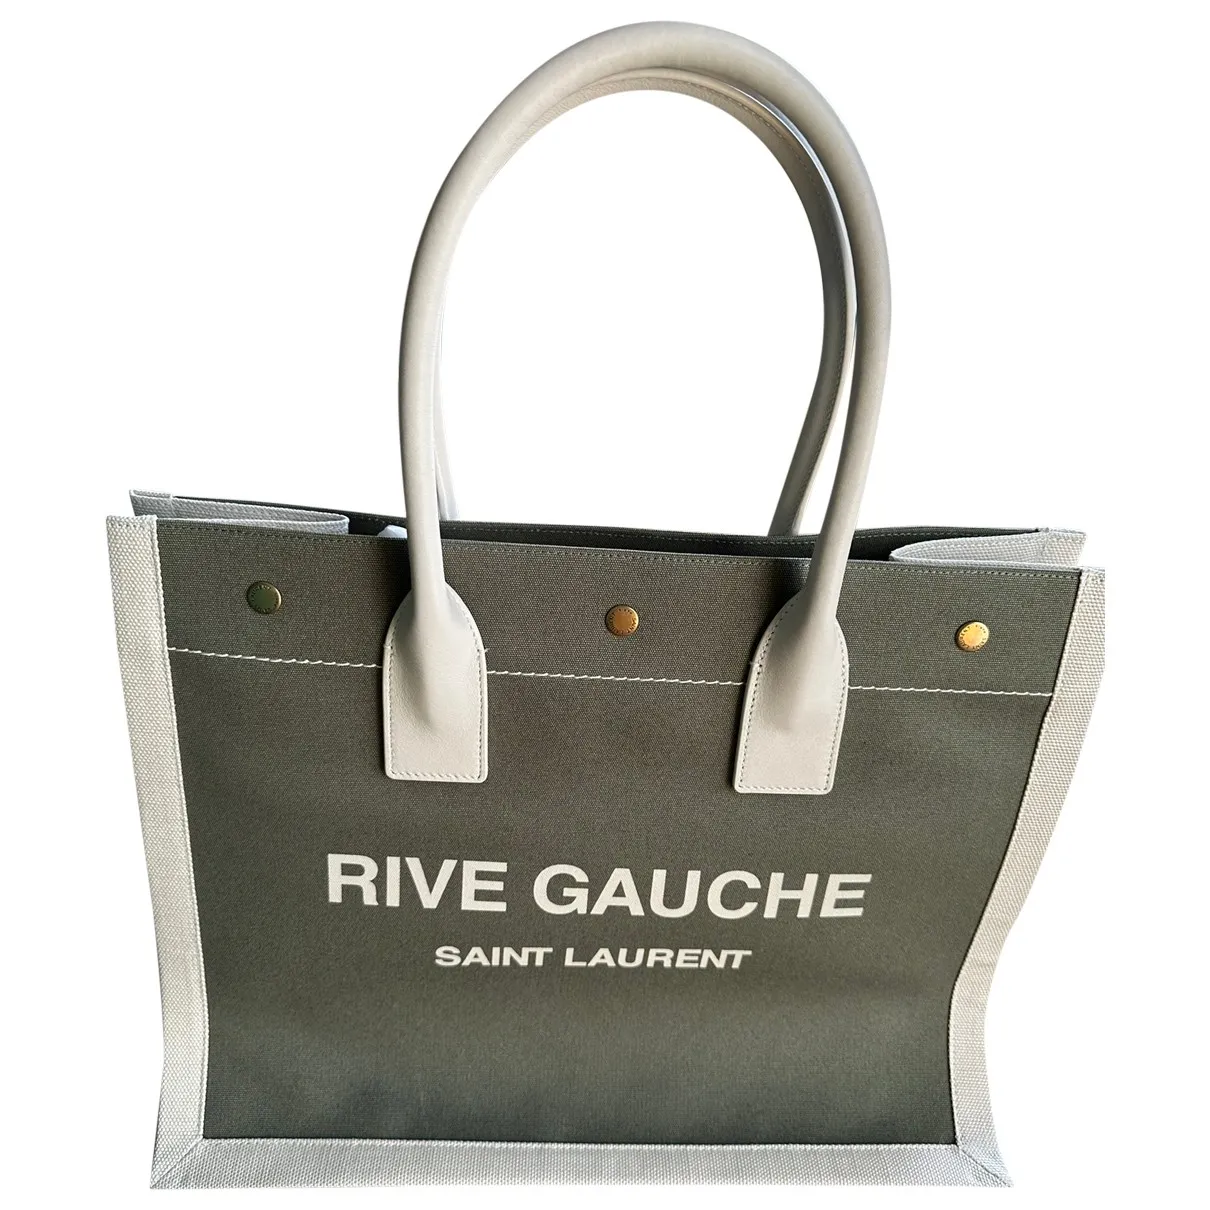 Rive Gauche Saint Laurent Handbags for Women - Vestiaire Collective